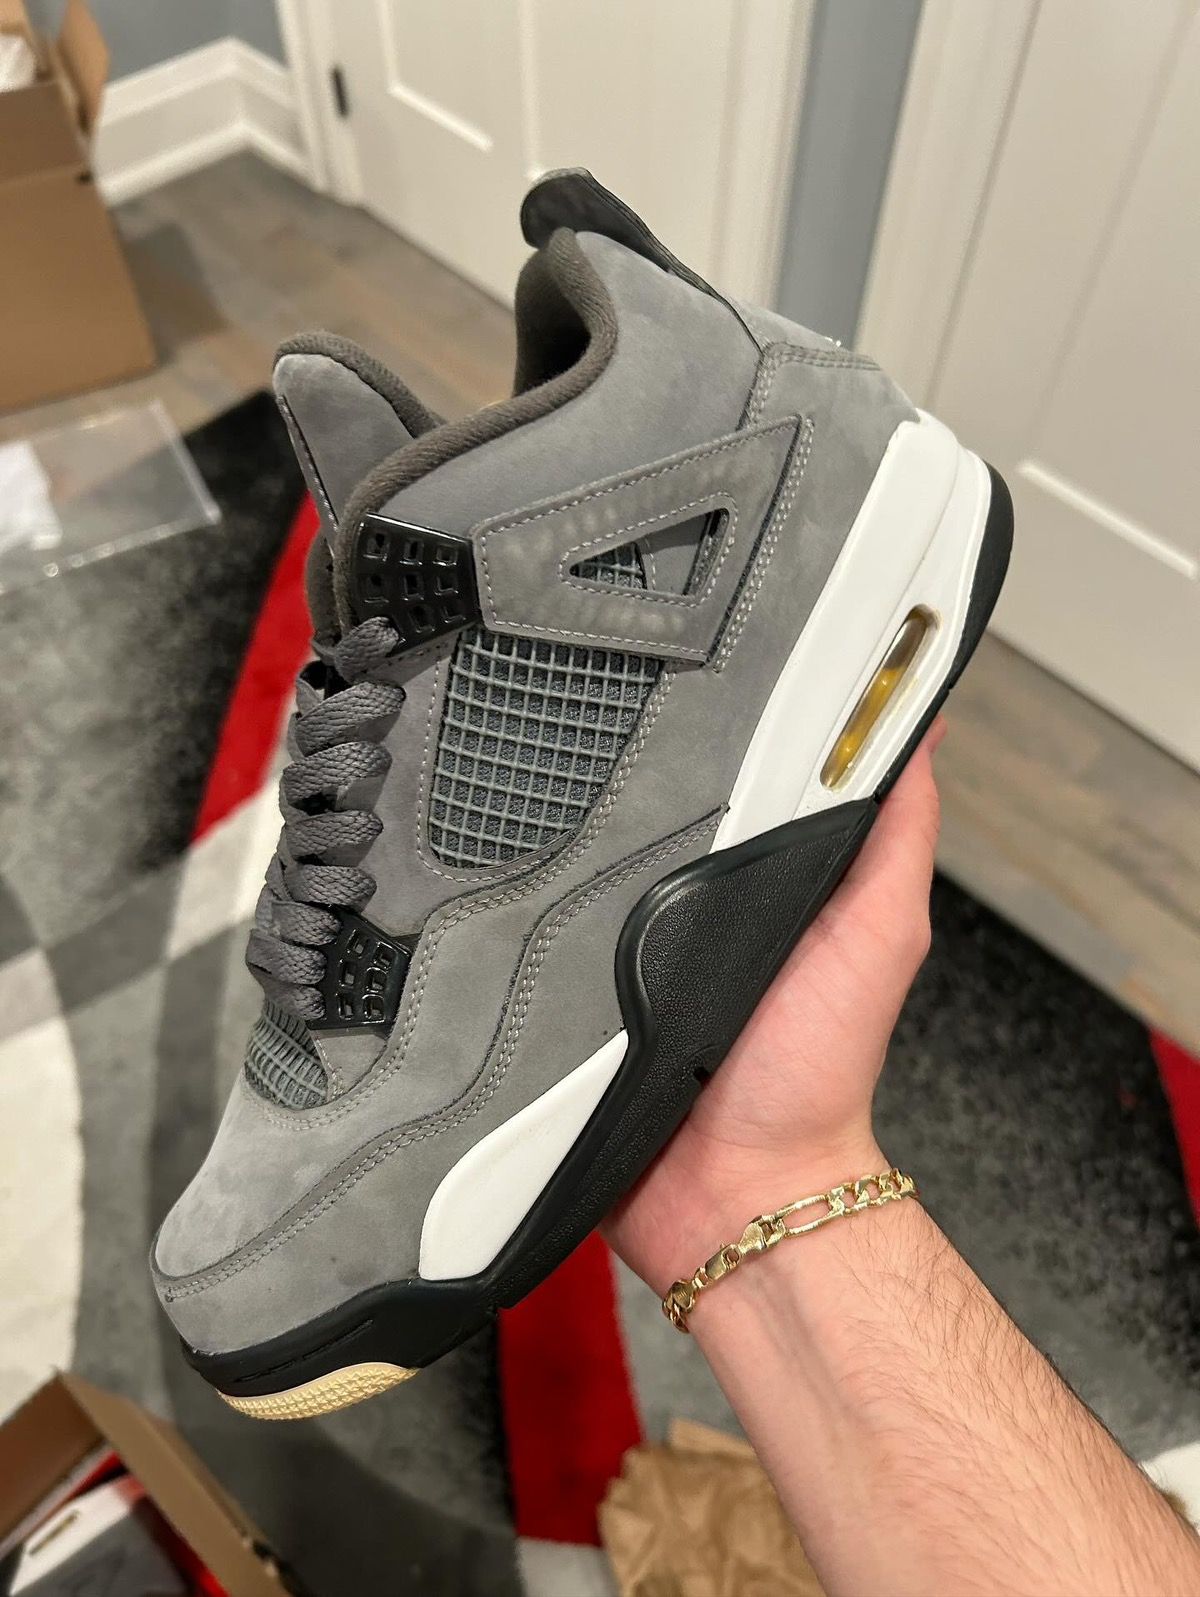 Pre-owned Jordan Nike Jordan 4 Retro “cool Grey” (2019) Shoes